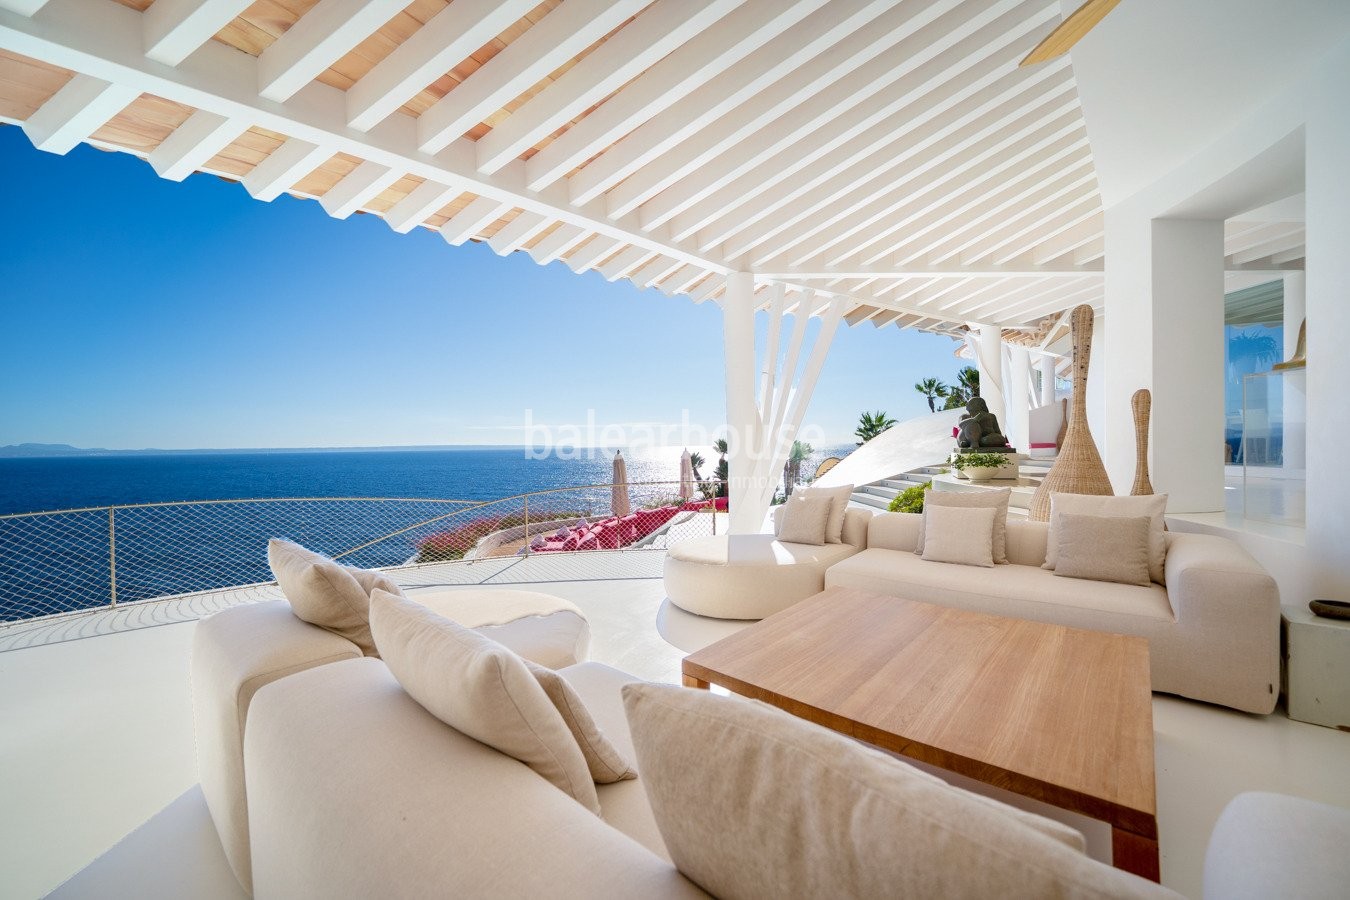 Villa de excepcional arquitectura fundida con las mejores vistas a la bahía y acceso directo al mar.